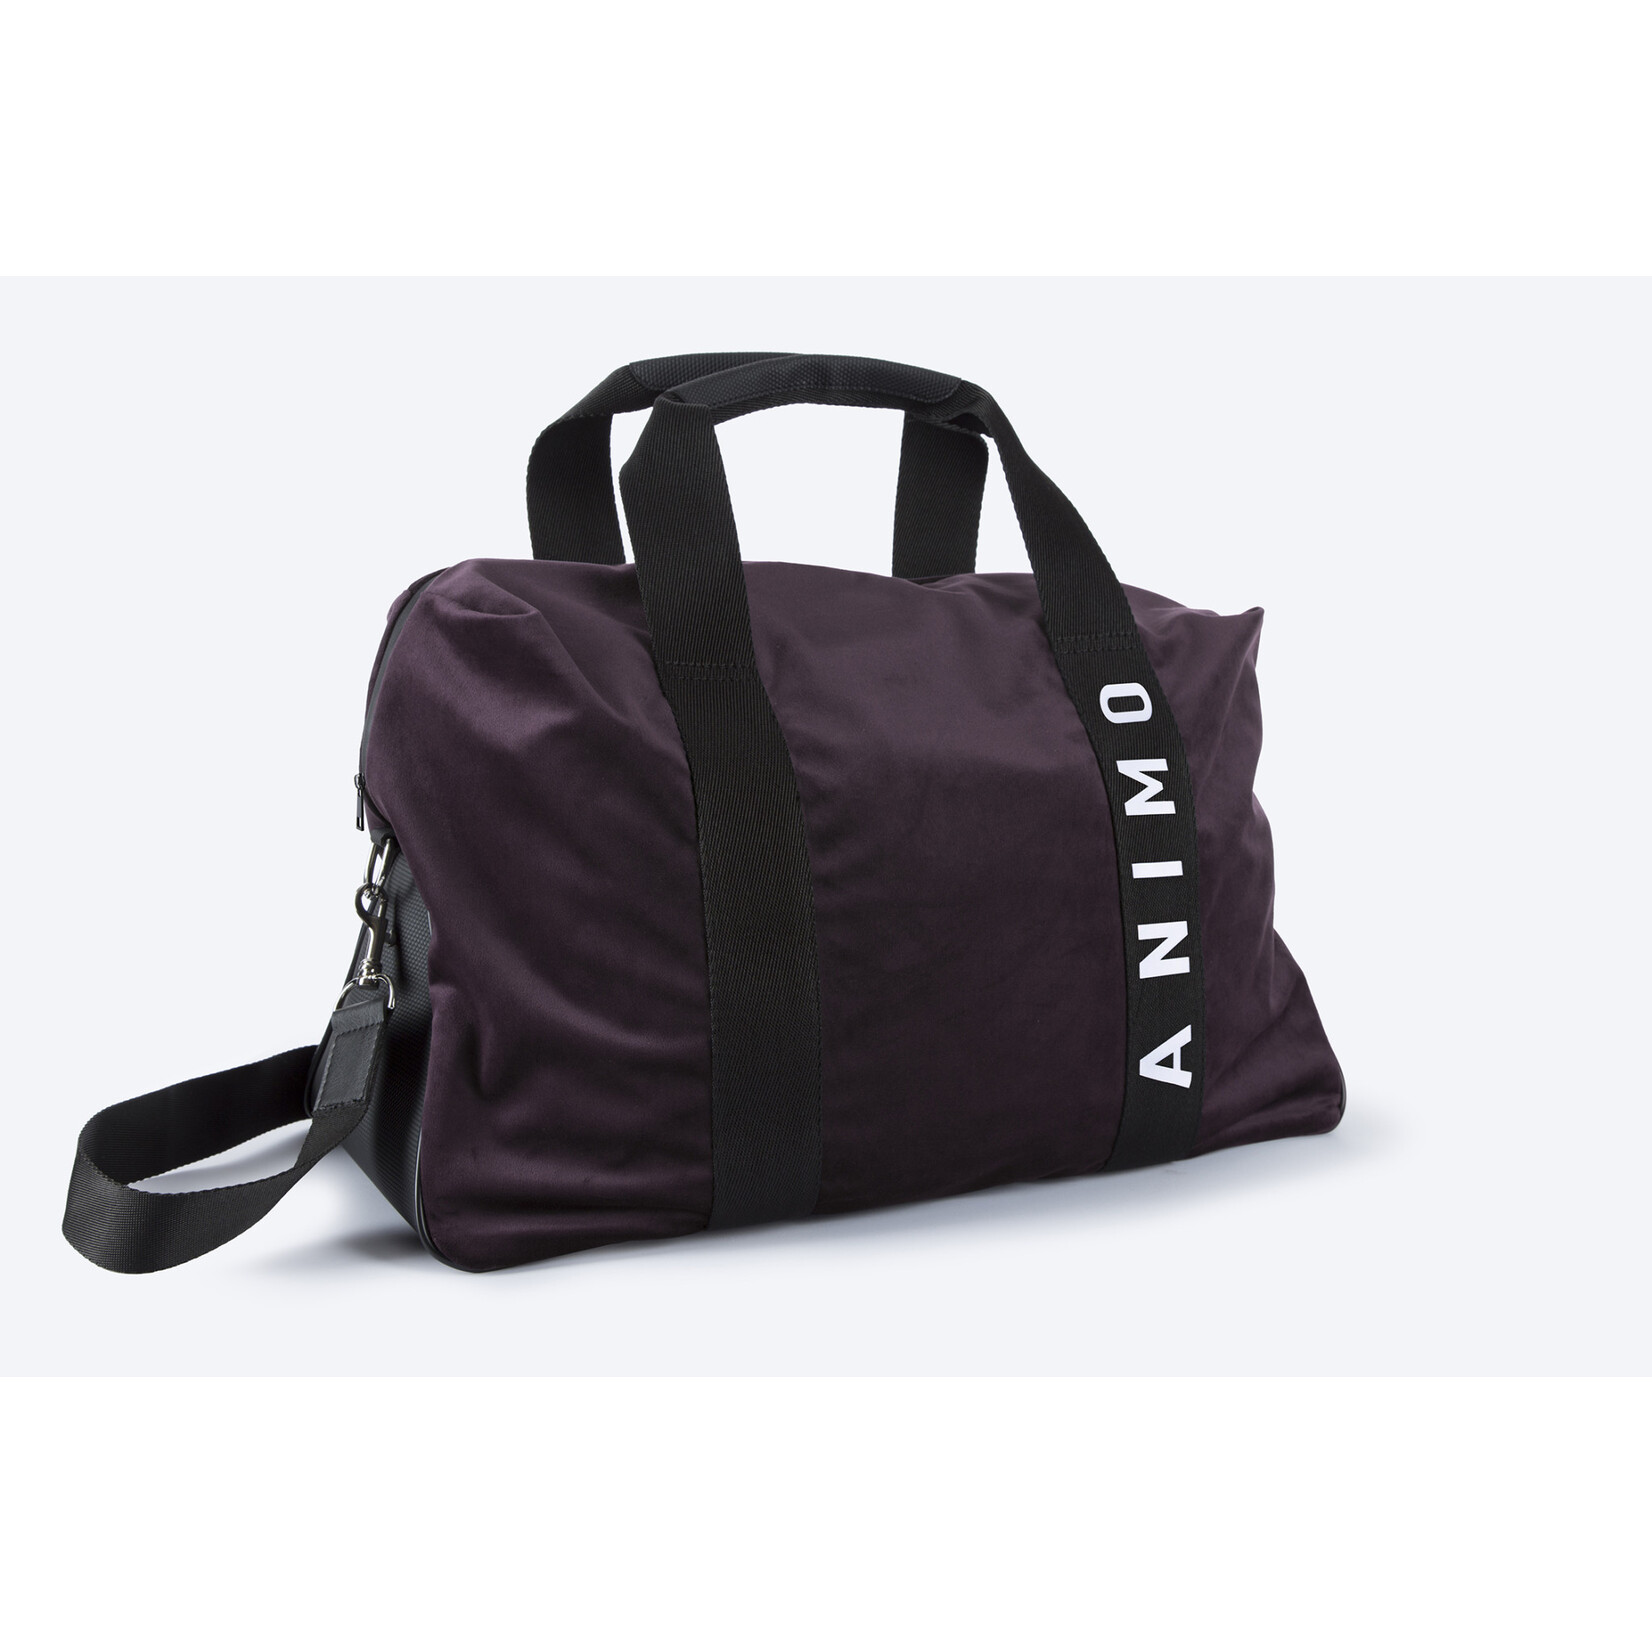 Animo King velvet travel bag with inside pocket